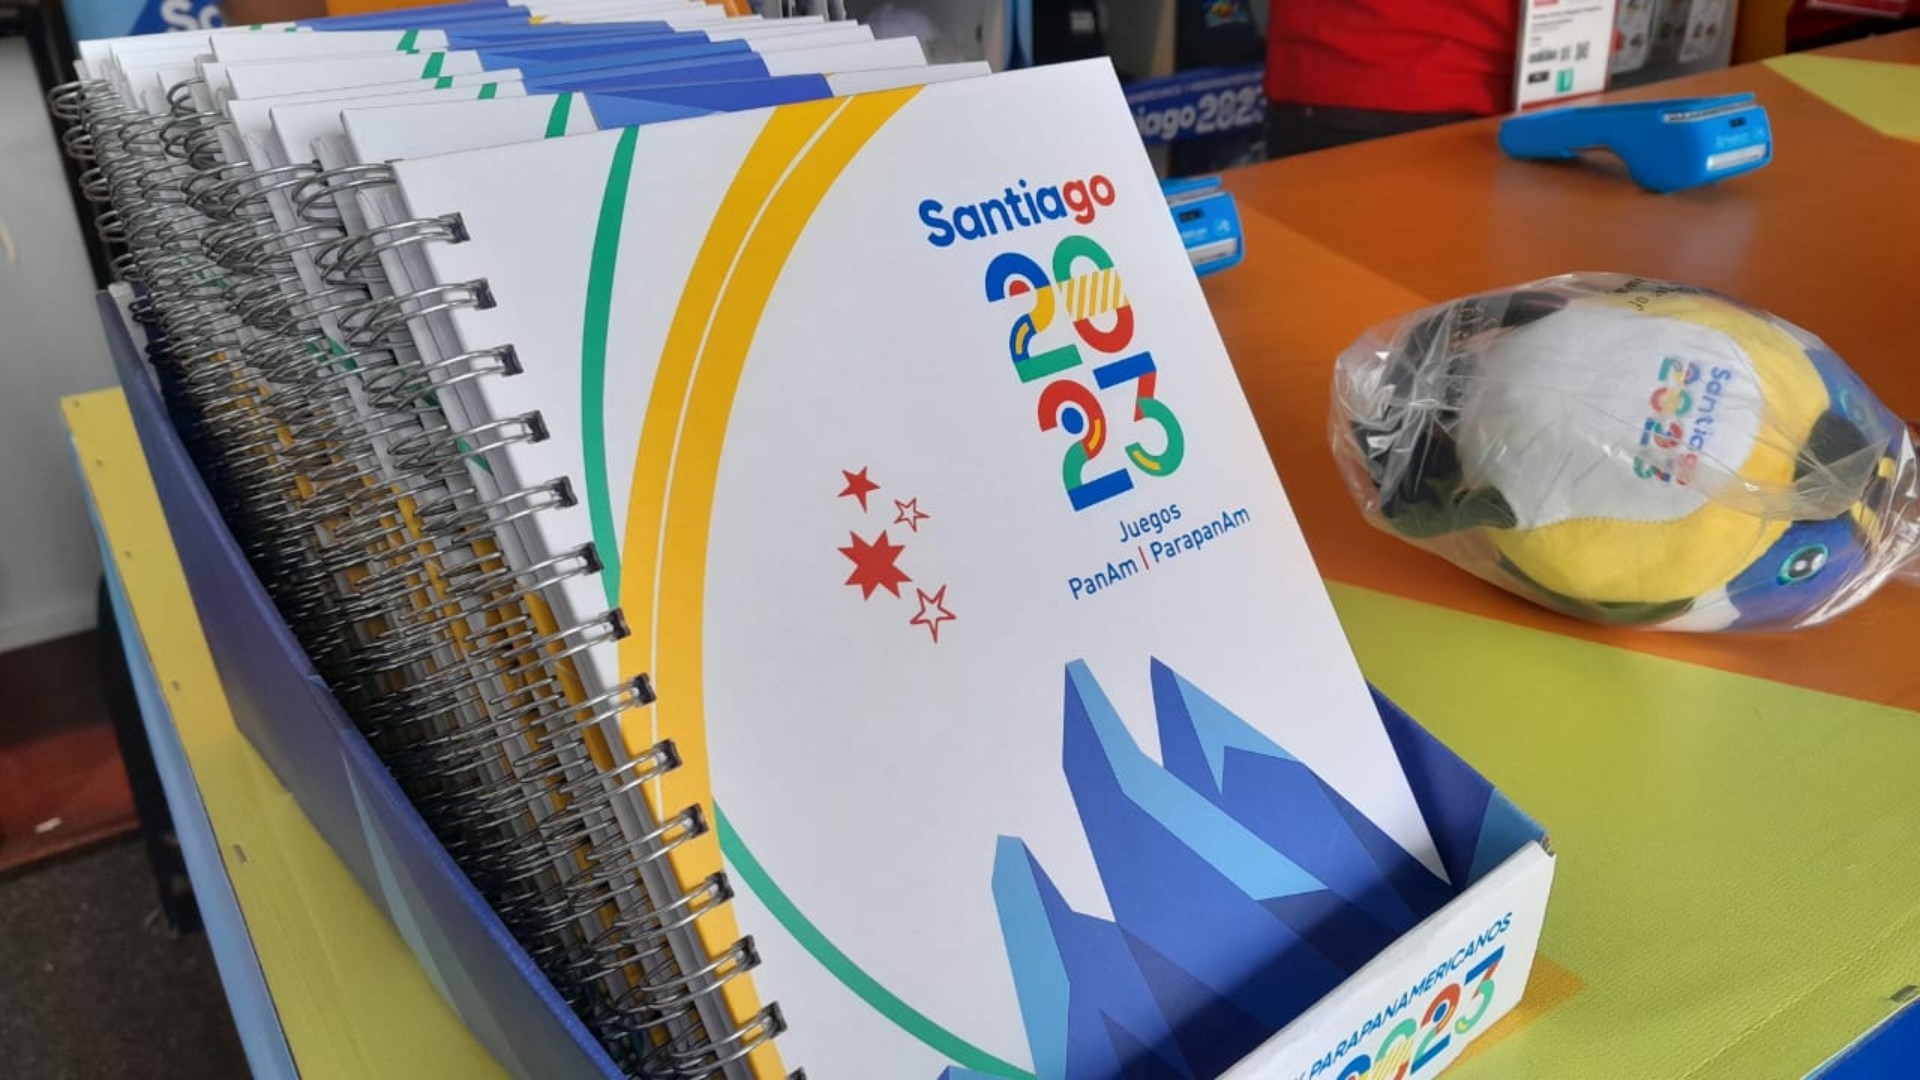 Llévate una parte de Santiago 2023 a casa: qué puedes encontrar en la tienda oficial de los Juegos